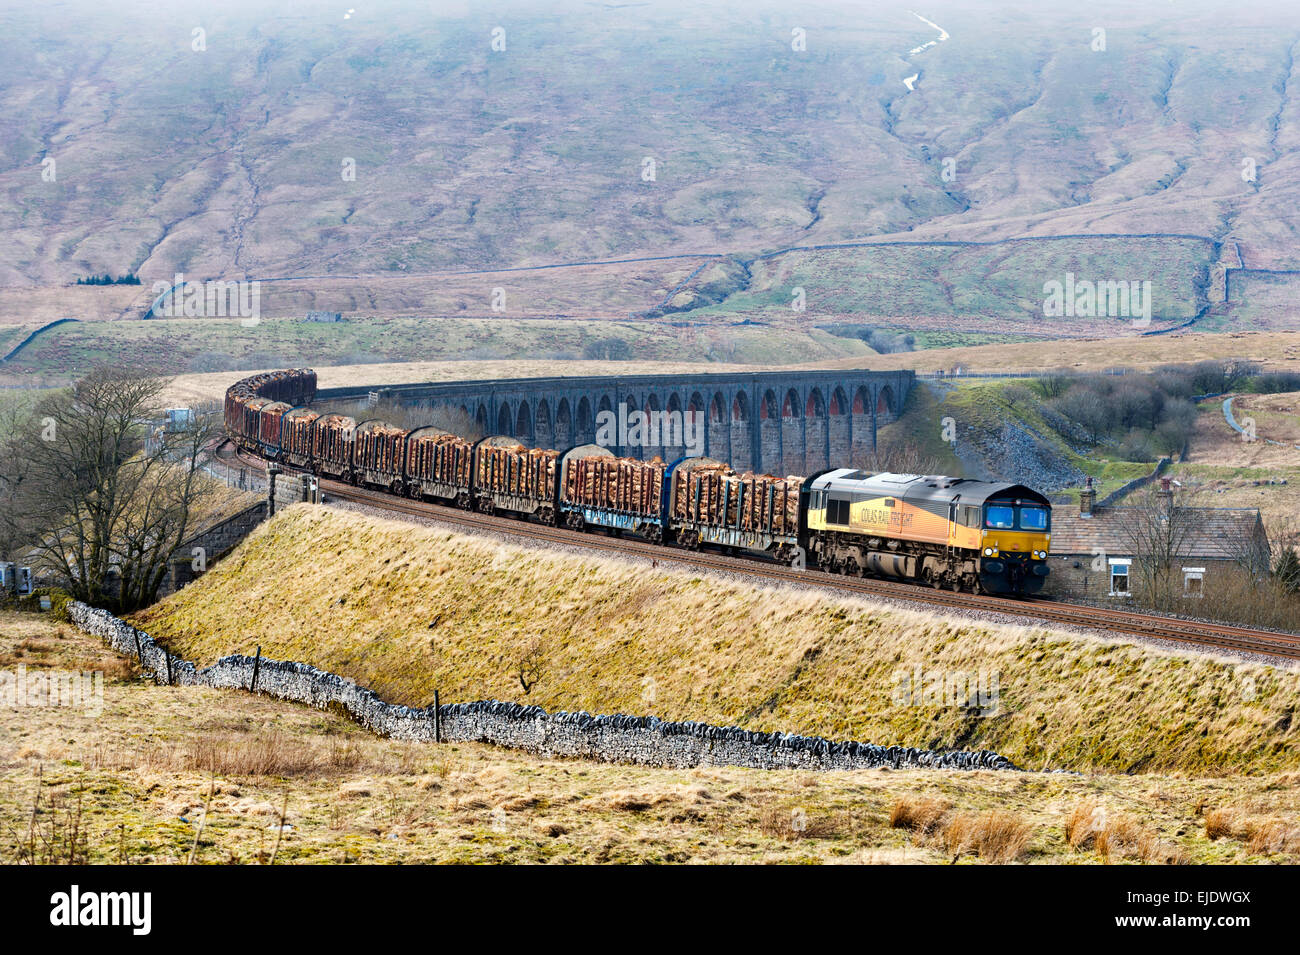 Un train transportant des feuilles de journaux Ribblehead Viaduc, Yorkshire du Nord, sur la ligne de chemin de fer s'installer à Carlisle. Destination de l'usine de traitement de Chirk, Pays de Galles. Banque D'Images